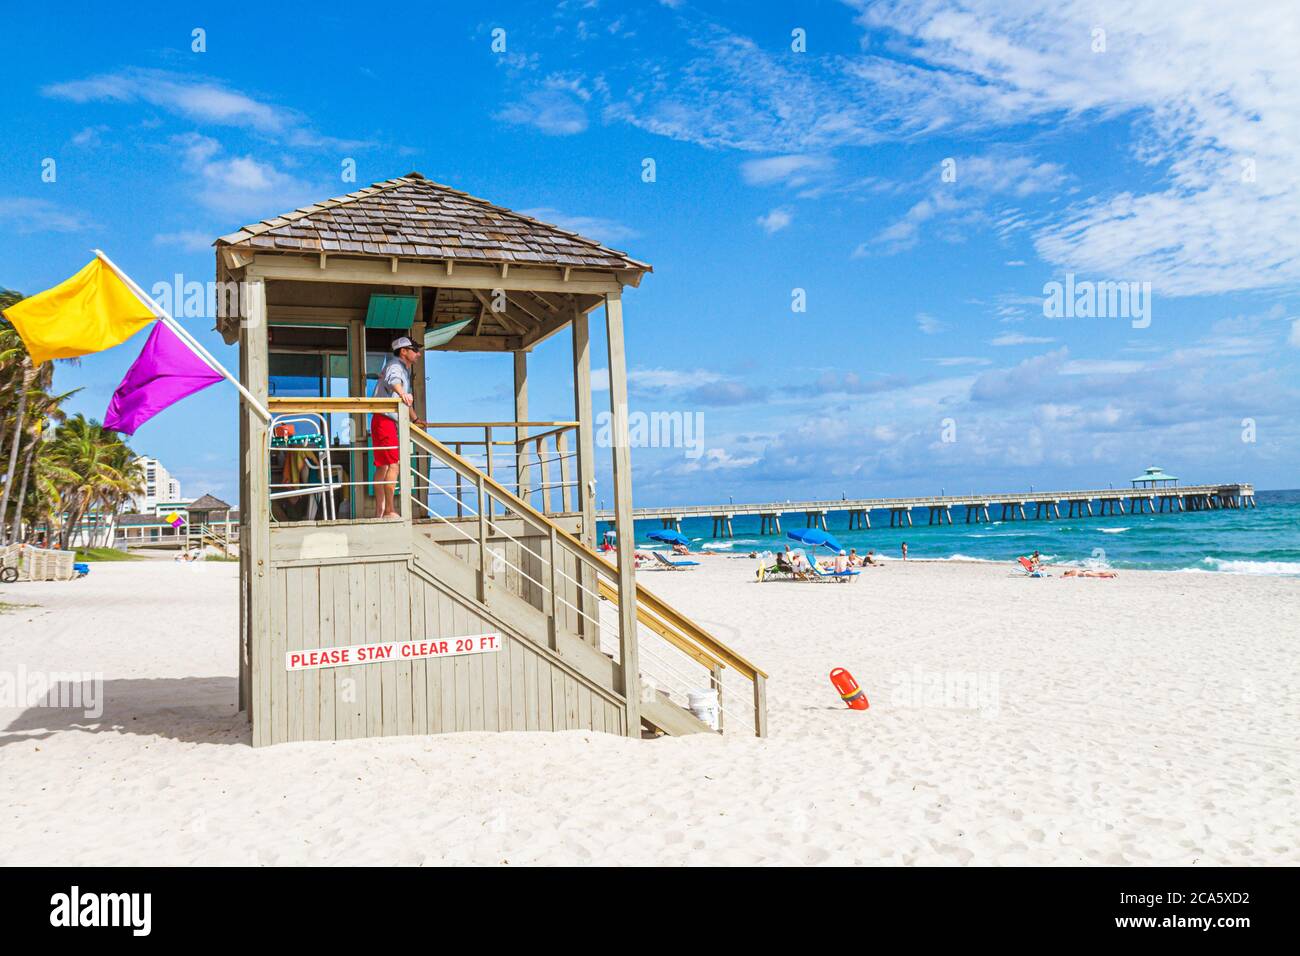 Deerfield Beach Florida, bagnino, stazione, capanna, sabbia, pubblico, costa dell'oceano Atlantico, riva, surf, solarium, molo di pesca Deerfield Beach International, Foto Stock